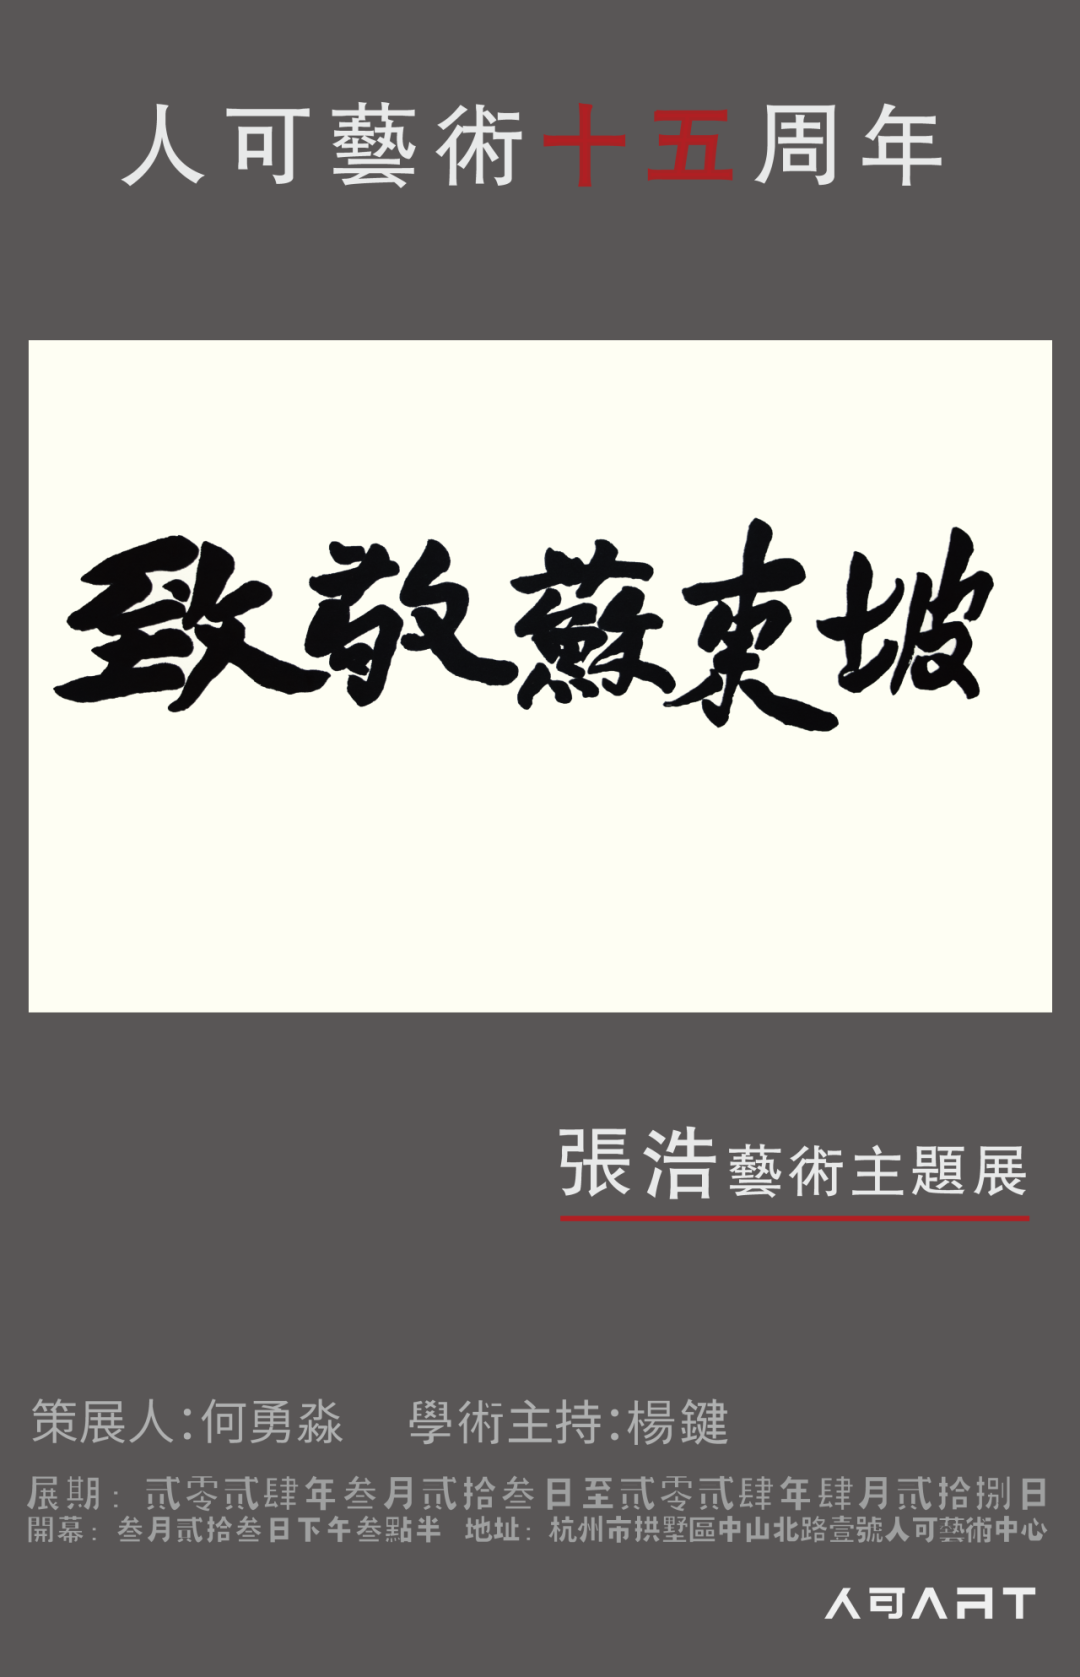 艺术因情感而生，“致敬苏东坡——张浩艺术主题展”将于3月23日在杭州开幕